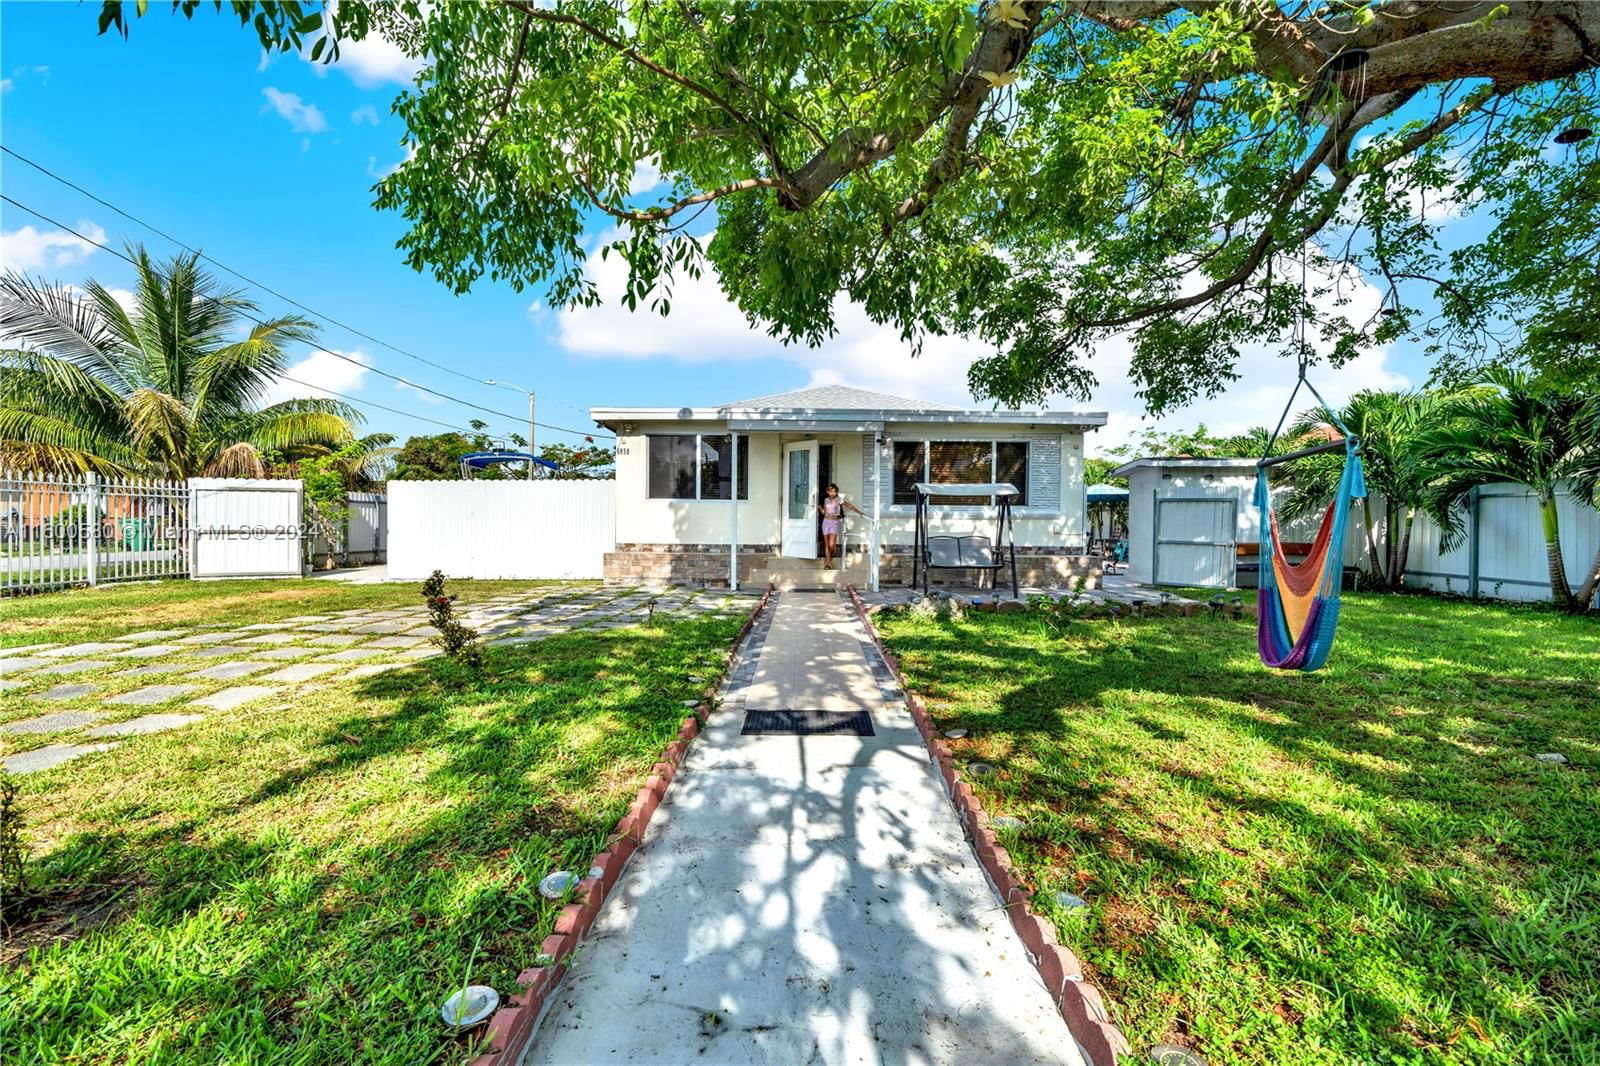 Real estate property located at 6850 20th Ave, Miami-Dade County, ORANGE RIDGE, Miami, FL